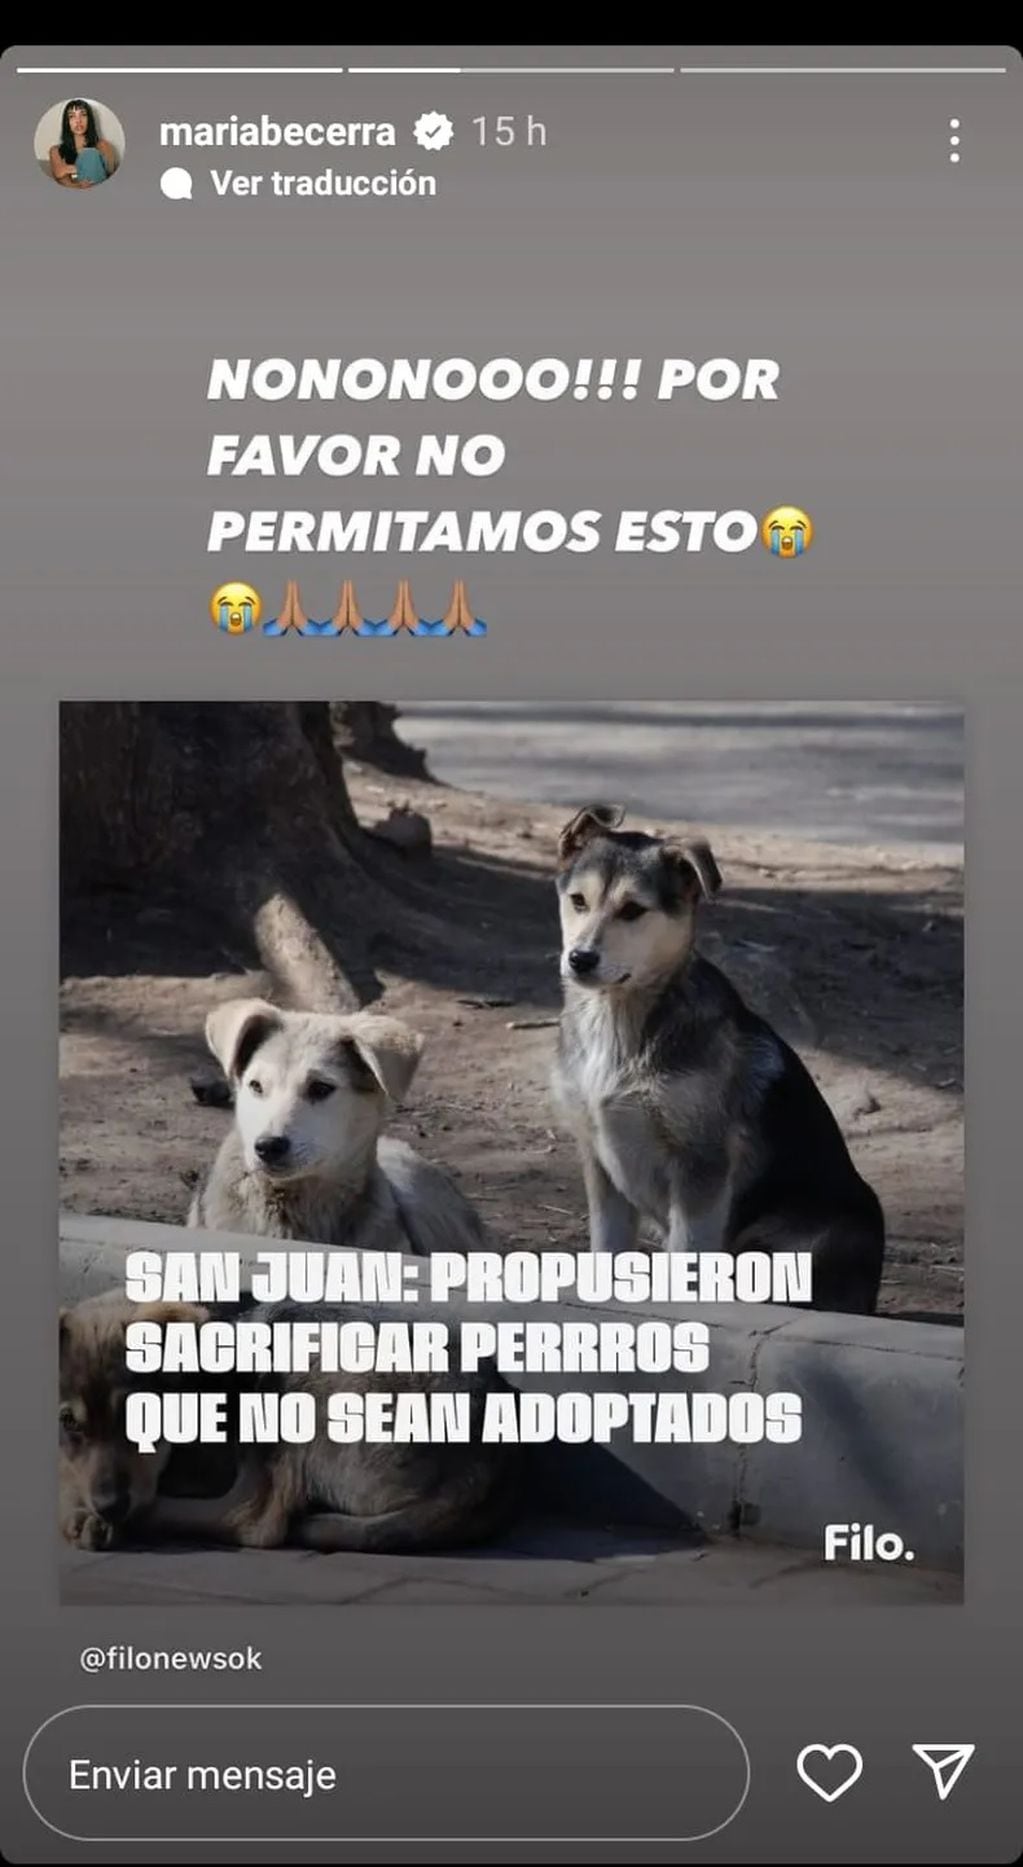 María Becerra salió a defender a los animales, en contra de la propuesta del intendente sanjuanino que quería sacrificar a los perros que no sean adoptados en 6 meses.